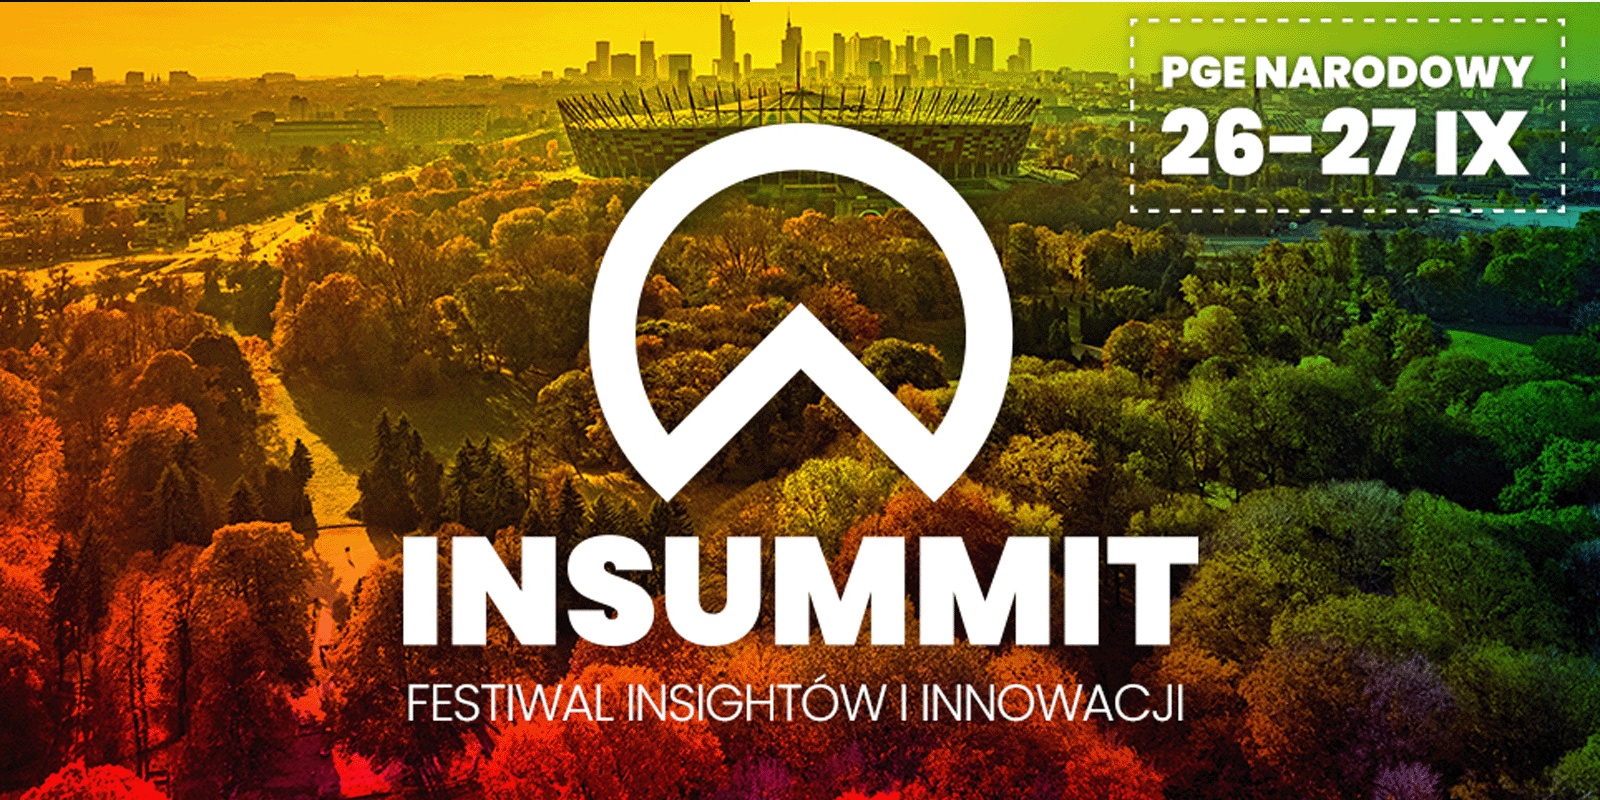 INSUMMIT – największy w Europie Centralnej Festiwal Insightów i Innowacji już w przyszłym tygodniu! Wydarzenia MEDIARUN COM INSUMMIT WYDARZENIE V1